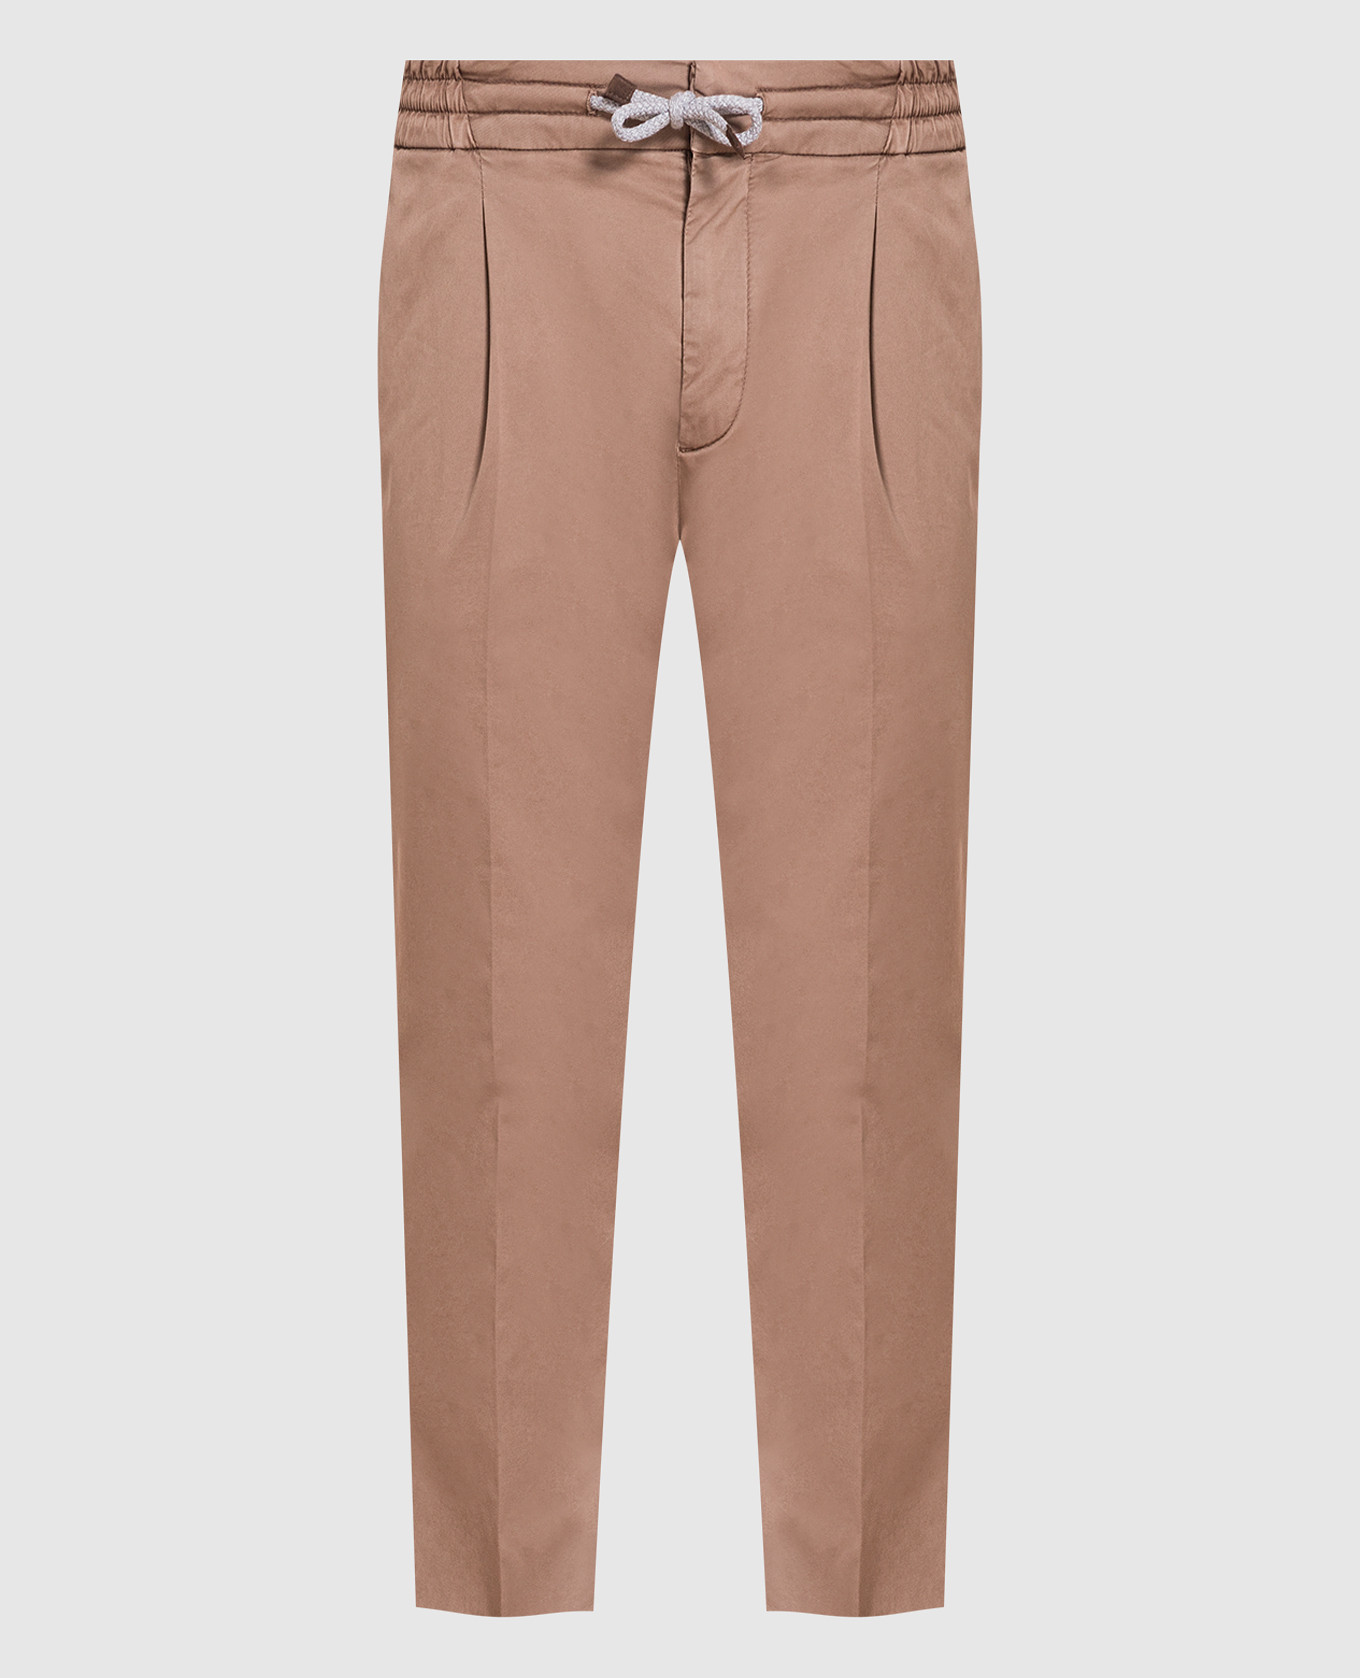 Brown pants